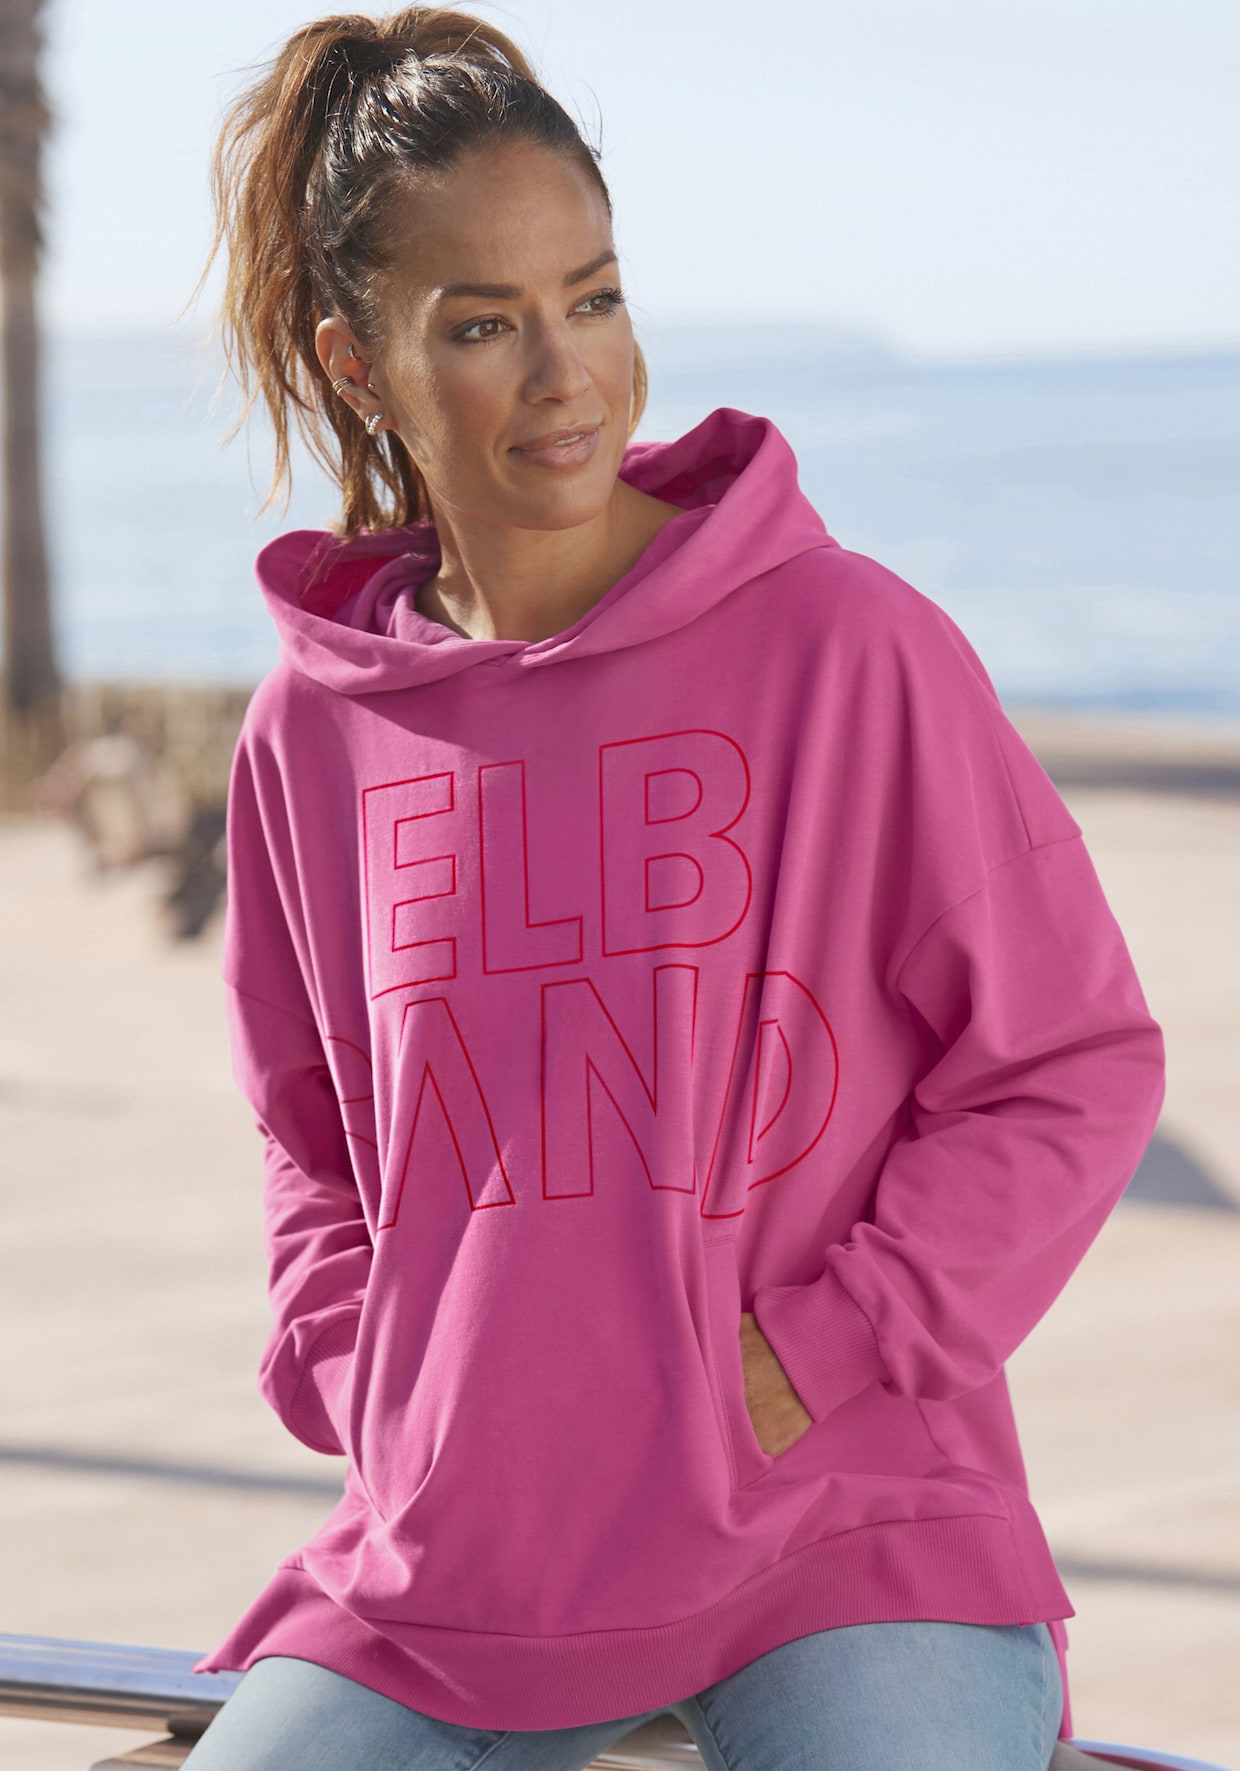 Elbsand Sweatshirt met capuchon - pink